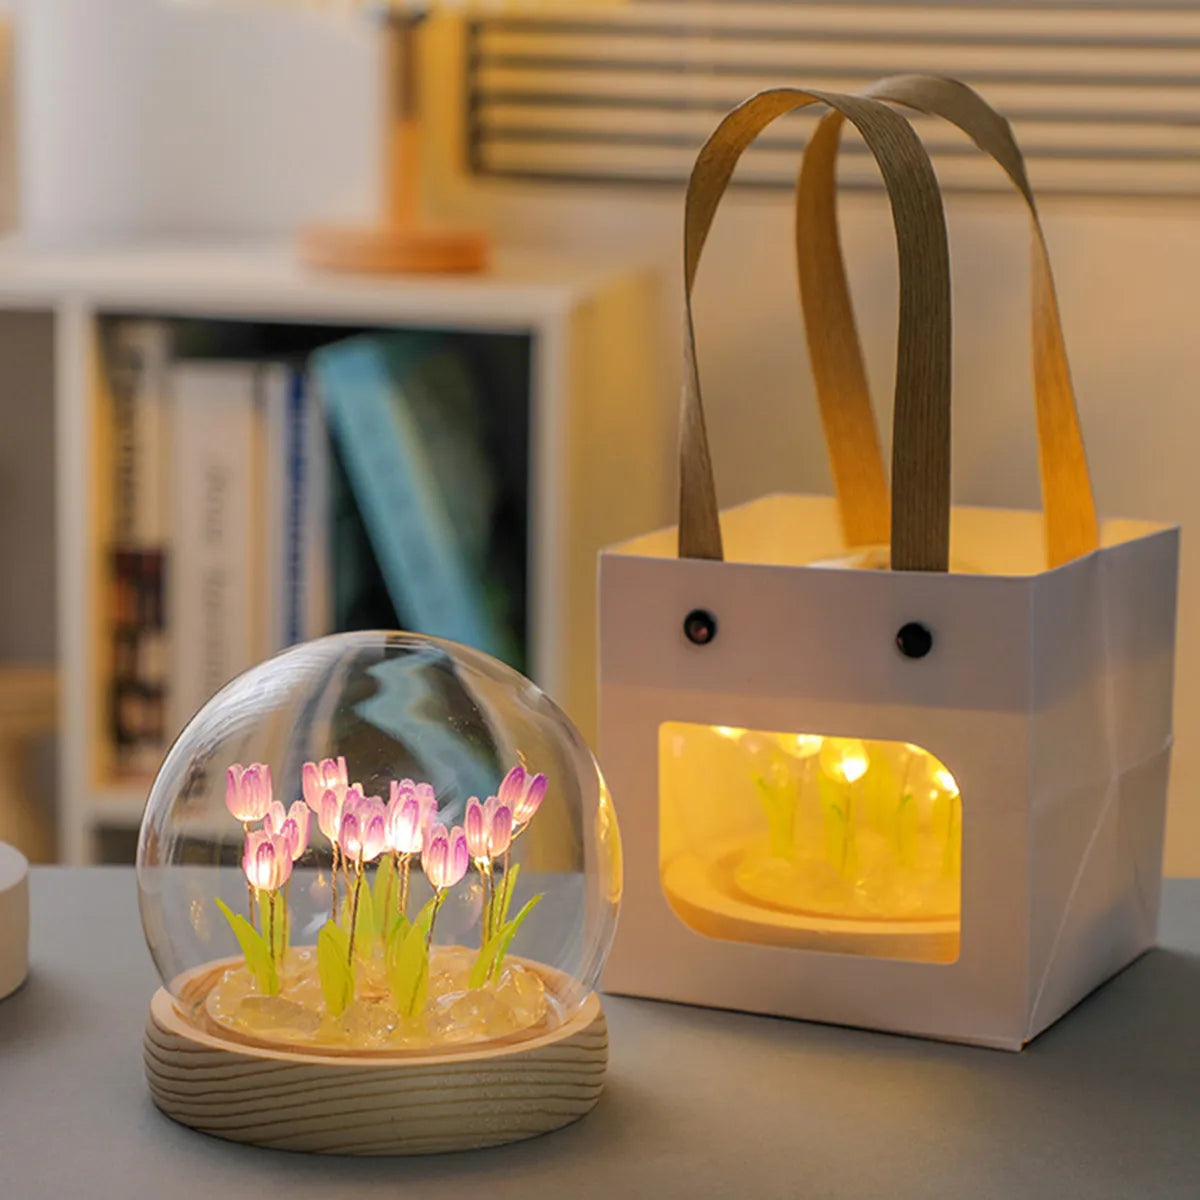 10/20pcs 튤립 야간 조명 배터리 작동 튤립 꽃 테이블 램프 DIY 시뮬레이션 튤립 LED 야간 조명 수제 침대 옆 조명